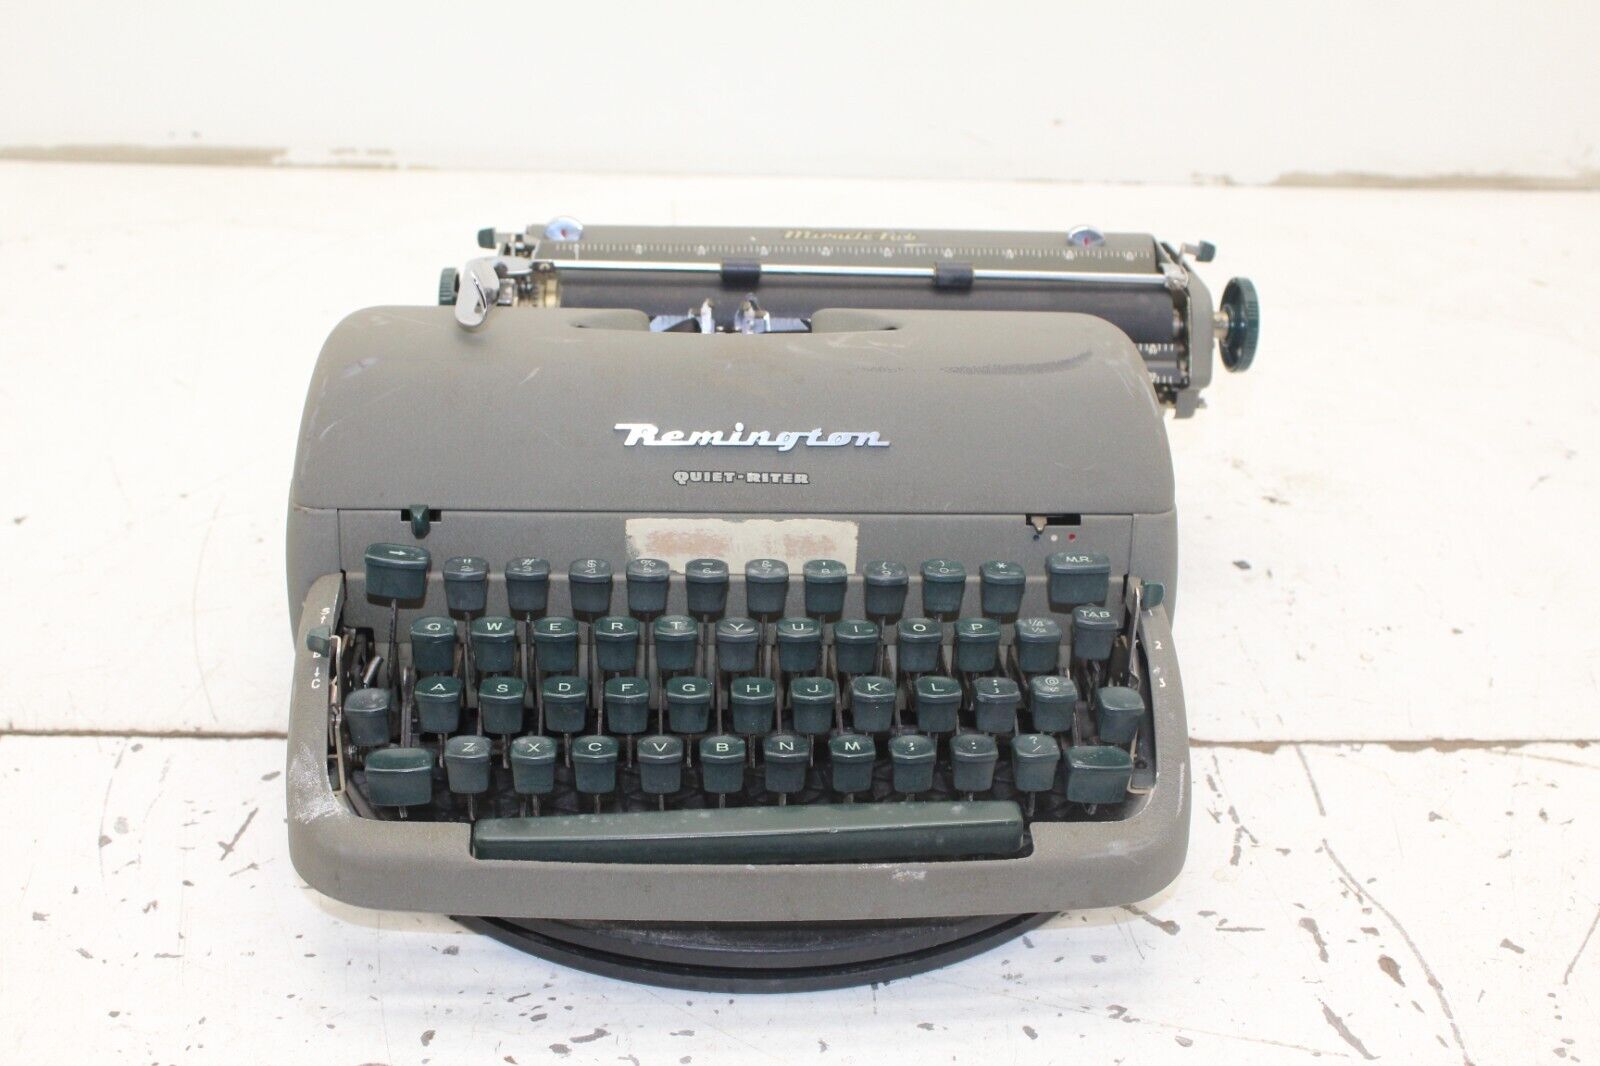 REMINGTON Quiet-Riter Miracle Tab Typewriter